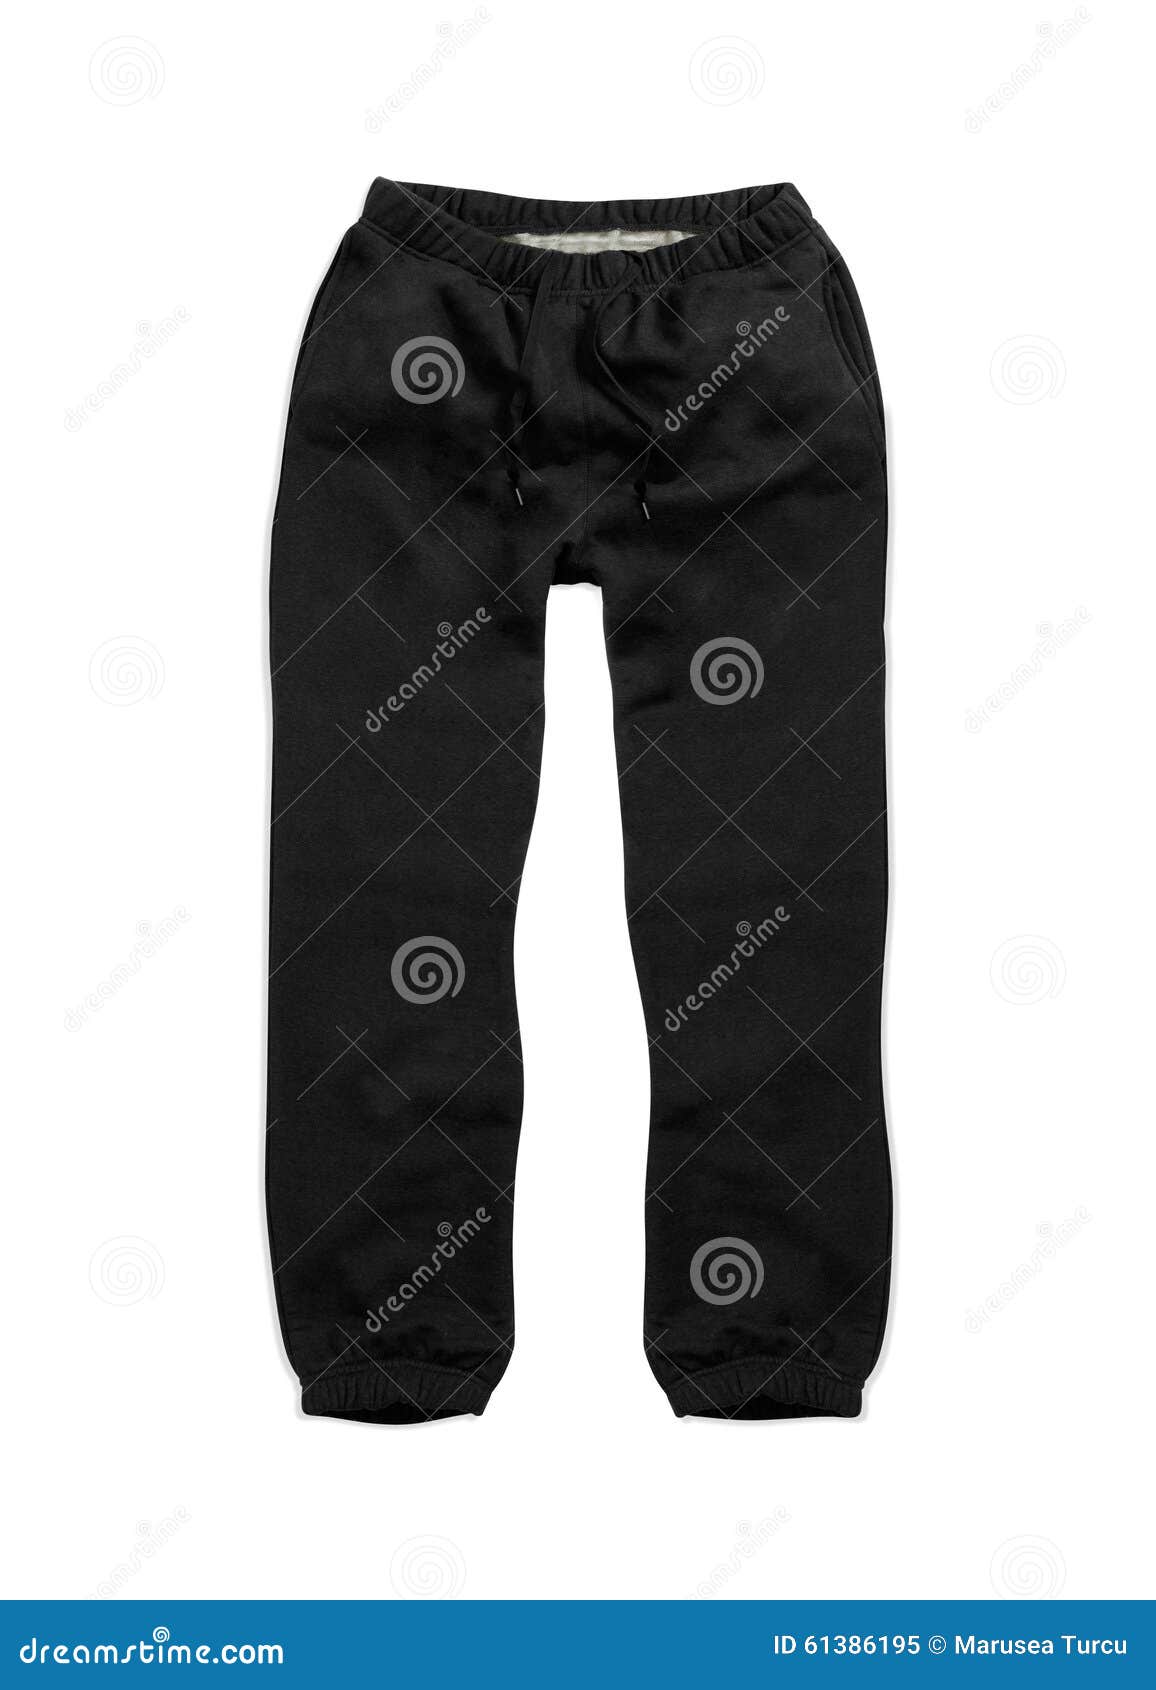 Black Sweatpants stock image. Image of isolated, black - 61386195